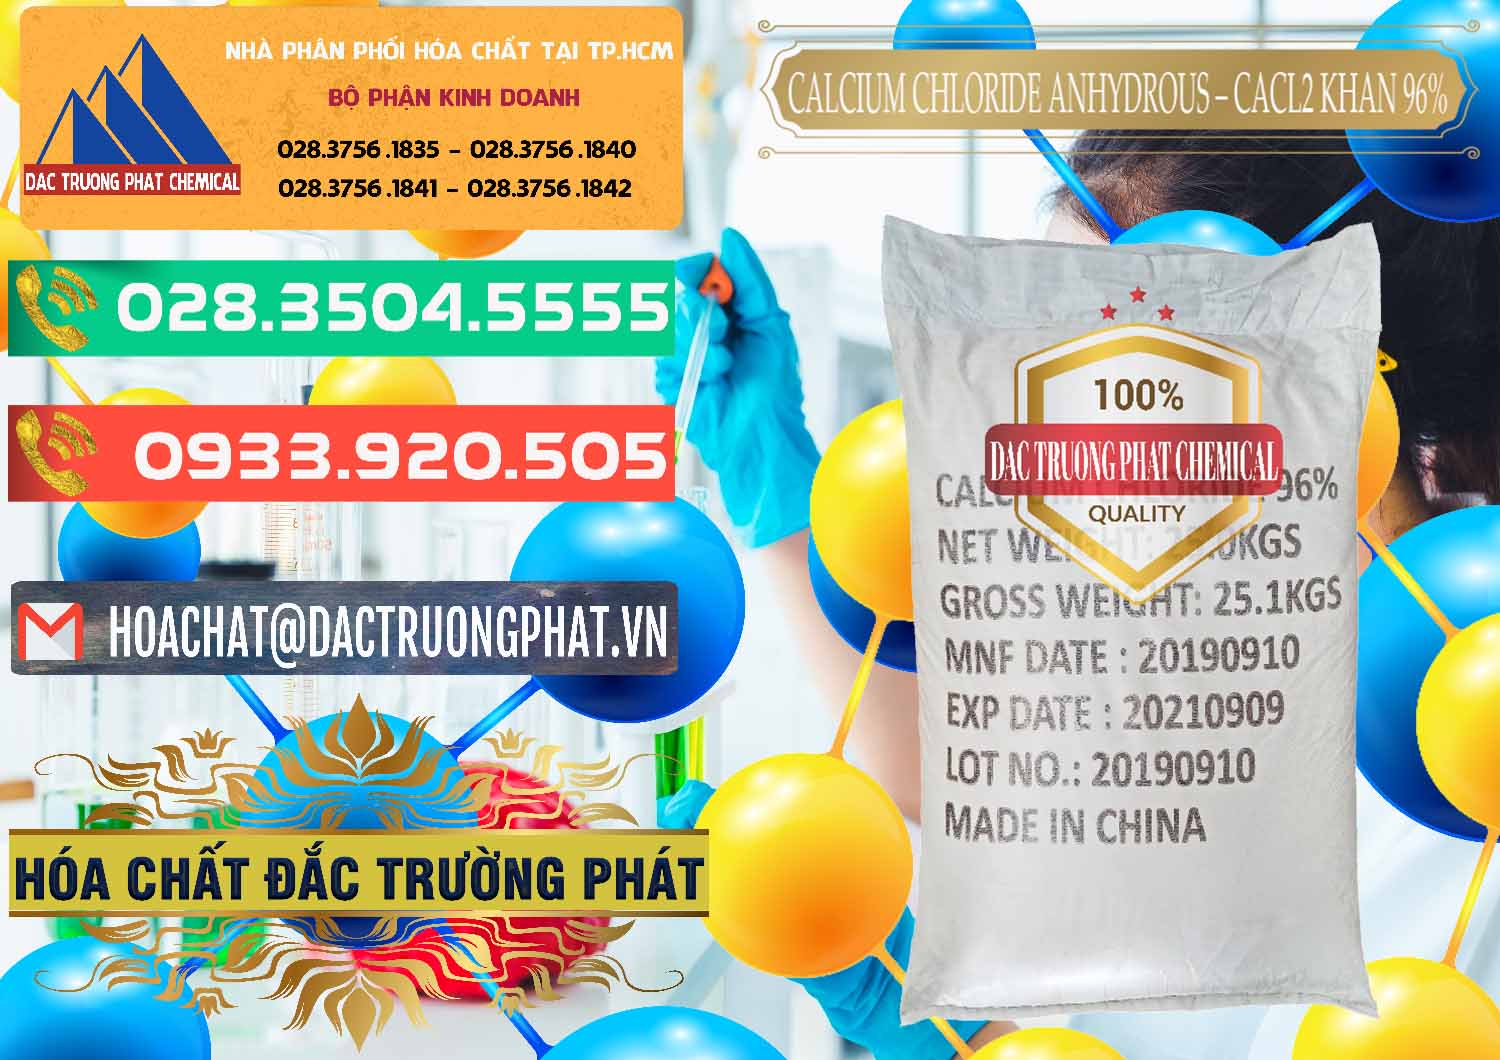 Chuyên bán và cung cấp CaCl2 – Canxi Clorua Anhydrous Khan 96% Trung Quốc China - 0043 - Cty phân phối và kinh doanh hóa chất tại TP.HCM - congtyhoachat.com.vn